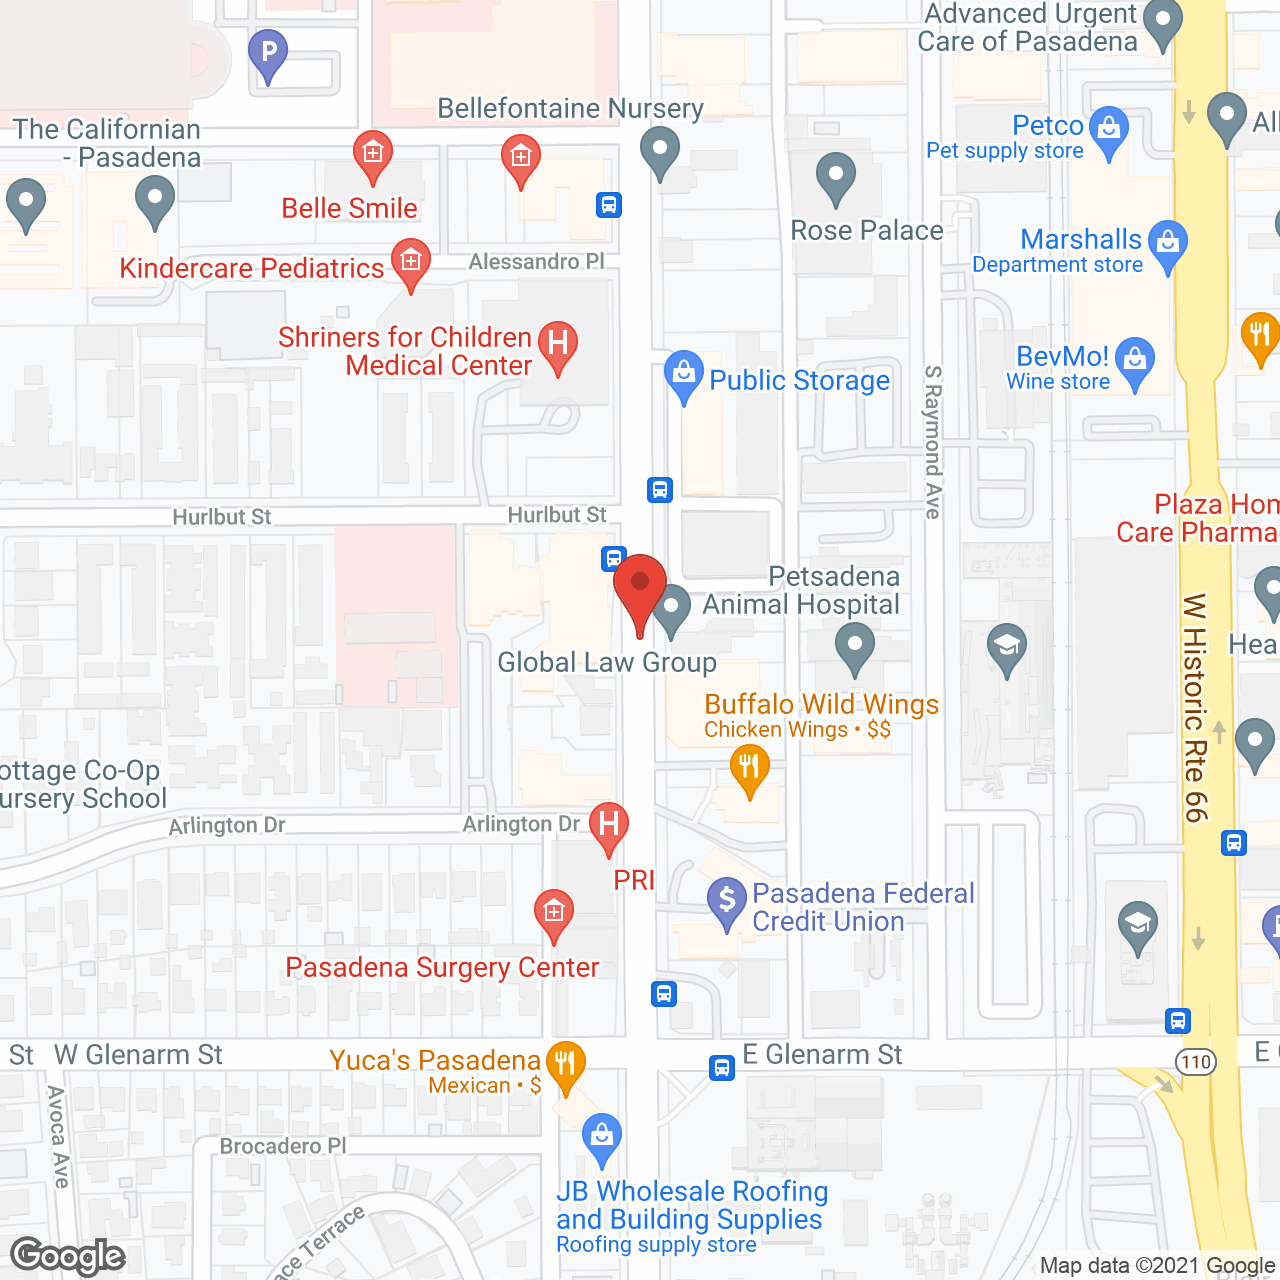 MorningStar Senior Living of Pasadena in google map